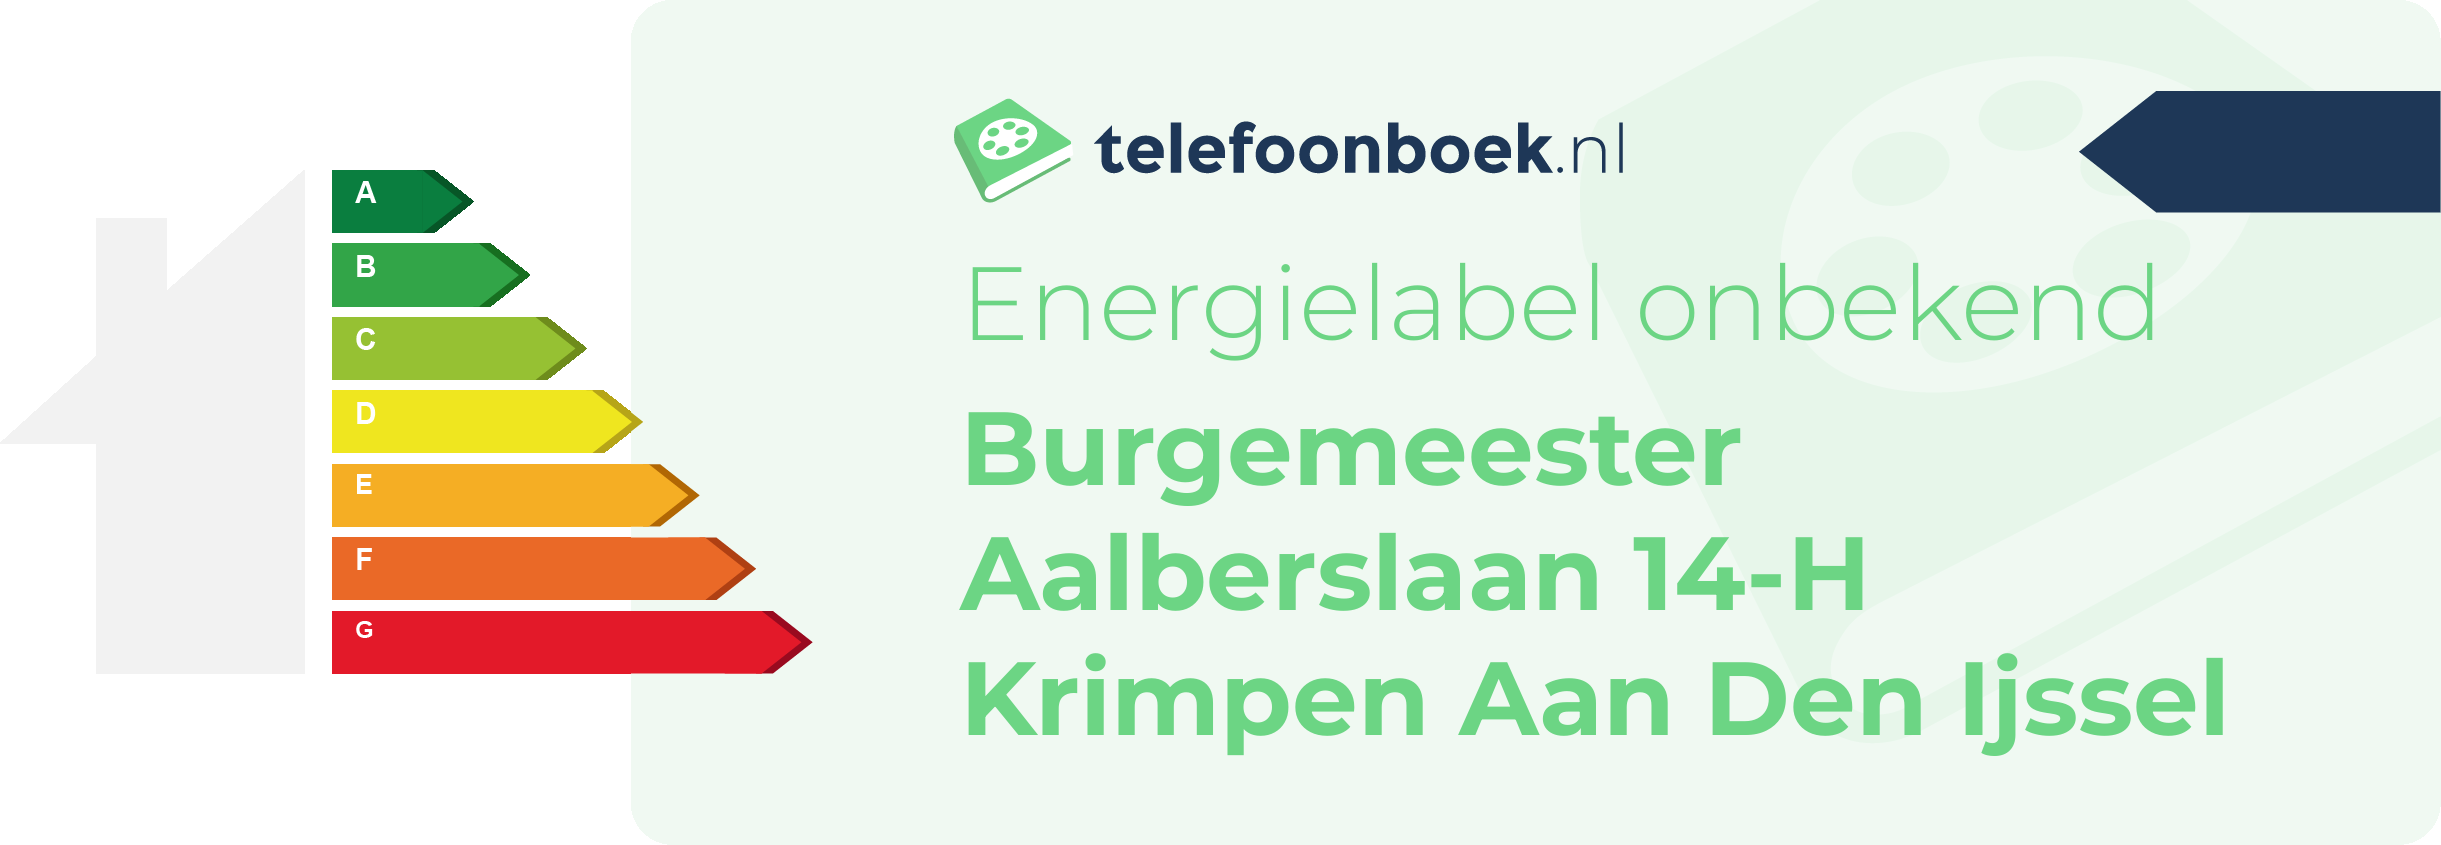 Energielabel Burgemeester Aalberslaan 14-H Krimpen Aan Den Ijssel